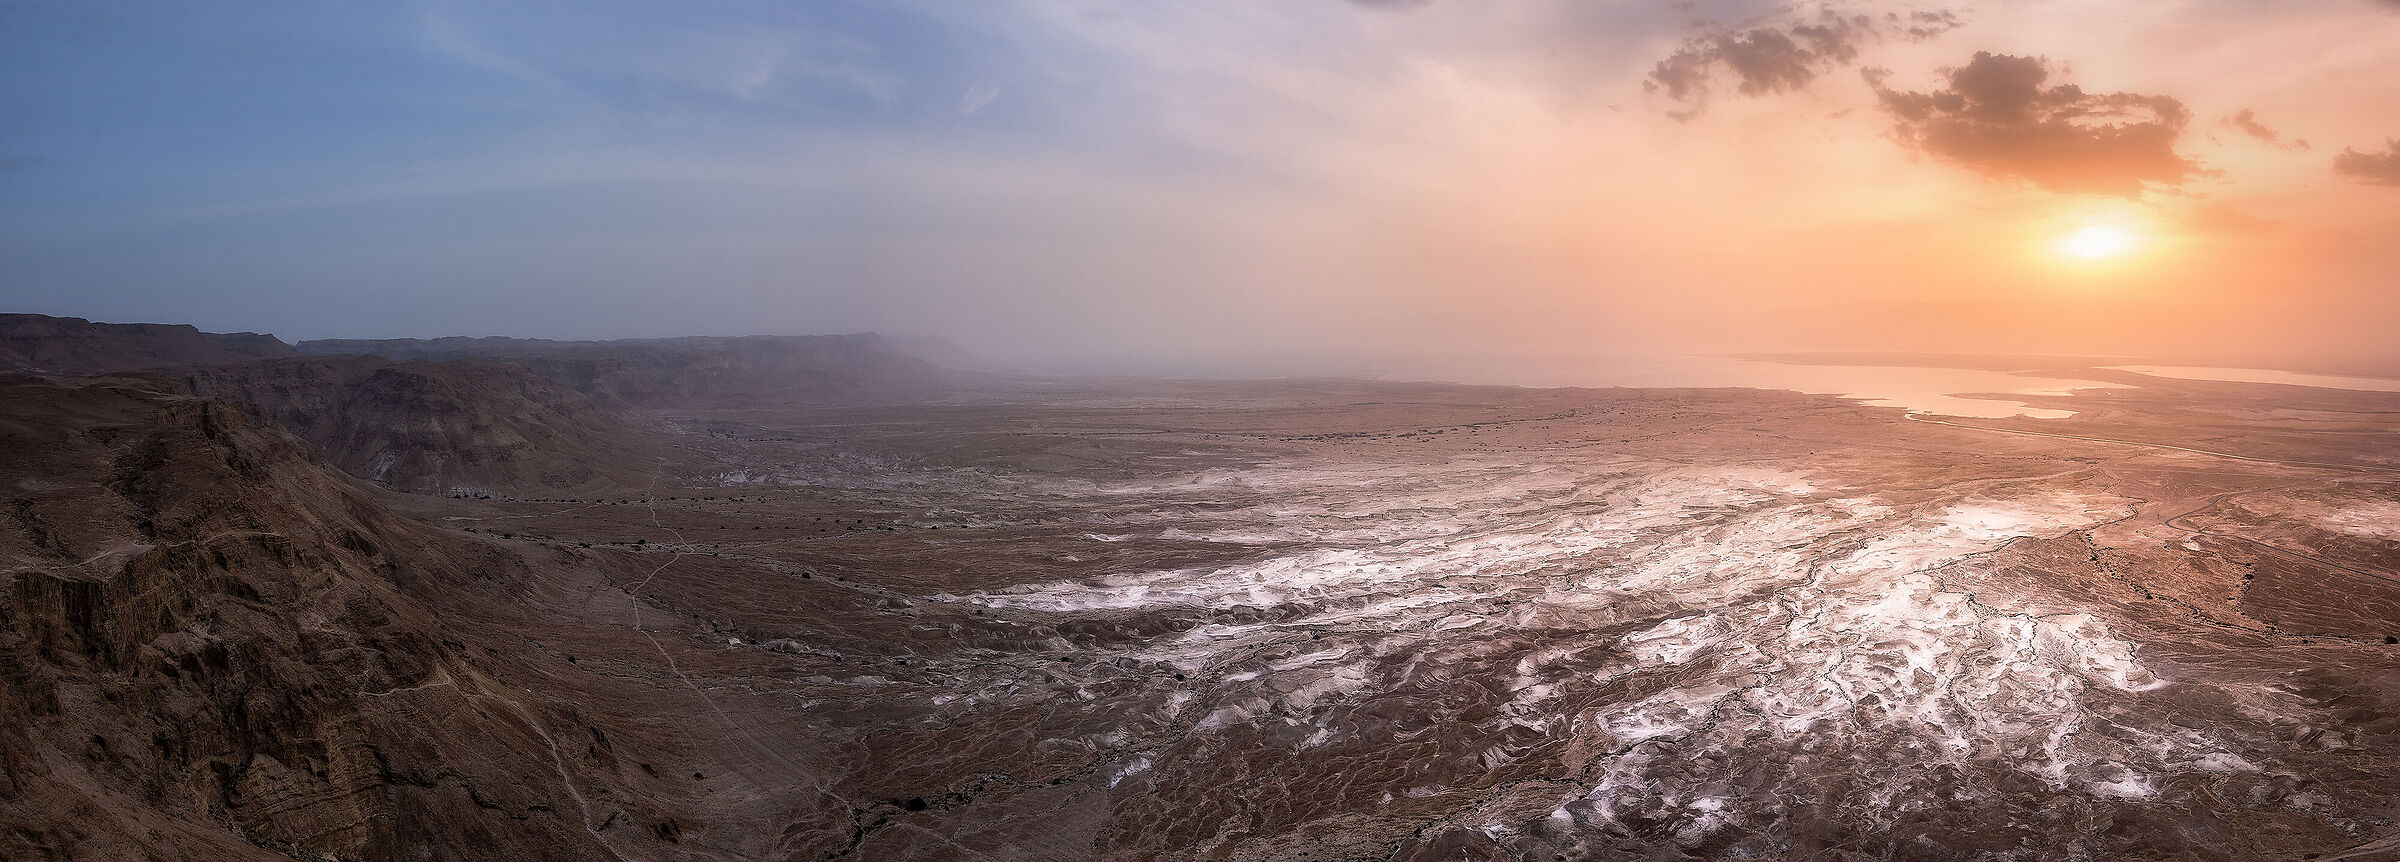 Sunrise from Masada...